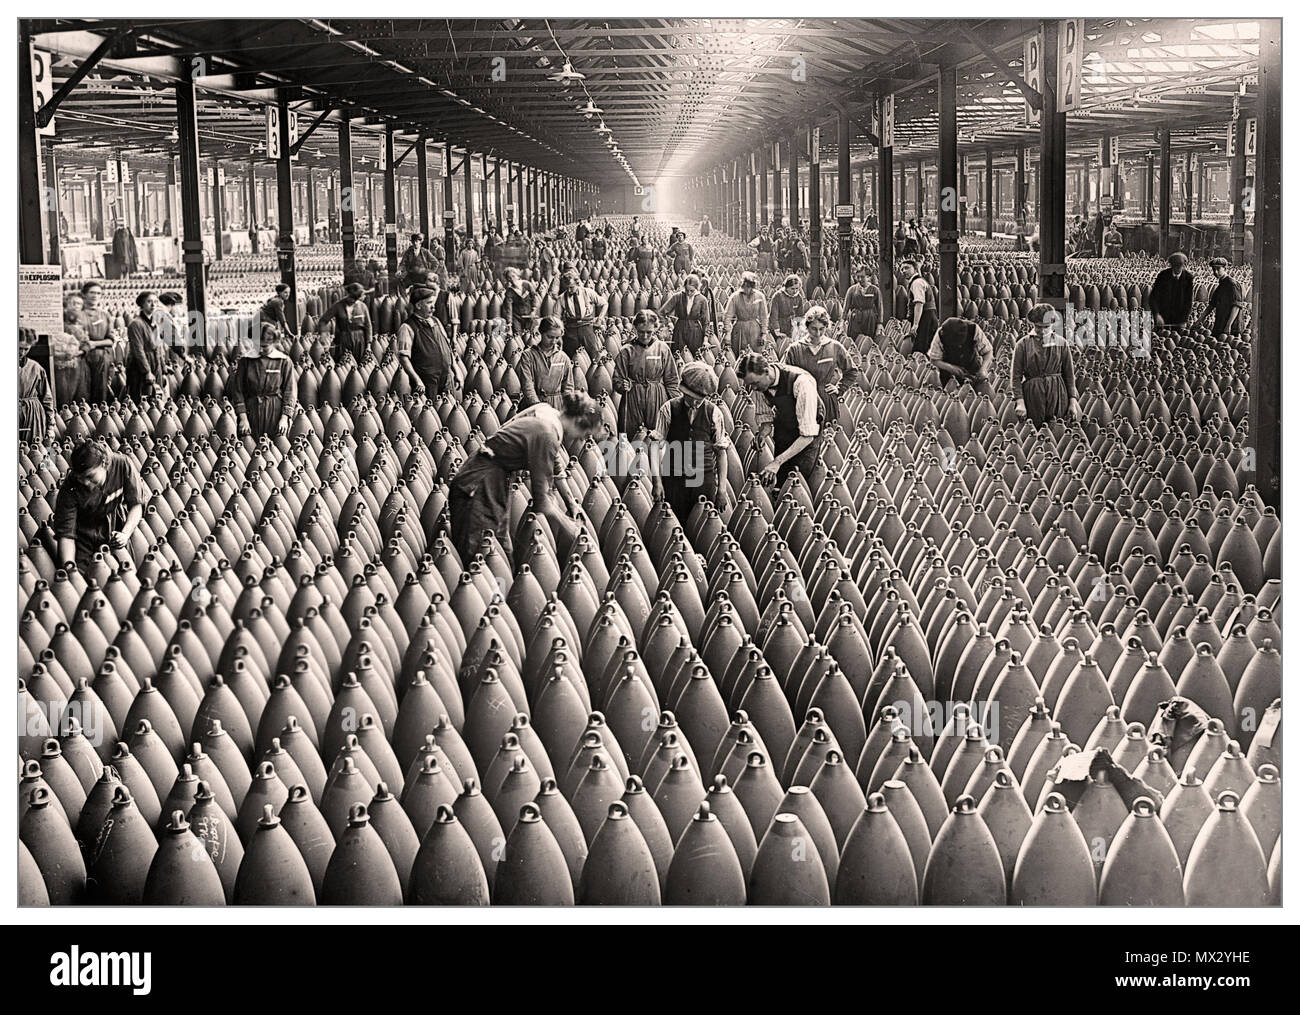 La Fábrica de Ammuniciones de Shells de la Guerra Mundial 1 Reino Unido La fábrica de llenado de municiones de Chilwell, Gran Bretaña, WW1 Más de 19 millones de proyectiles fueron llenos de explosivos aquí por 10.000 trabajadores entre 1915-1918, durante la Guerra Mundial de 1. La fábrica llenó más de la mitad de todas las conchas británicas durante la Gran Guerra de WW1. Foto de stock